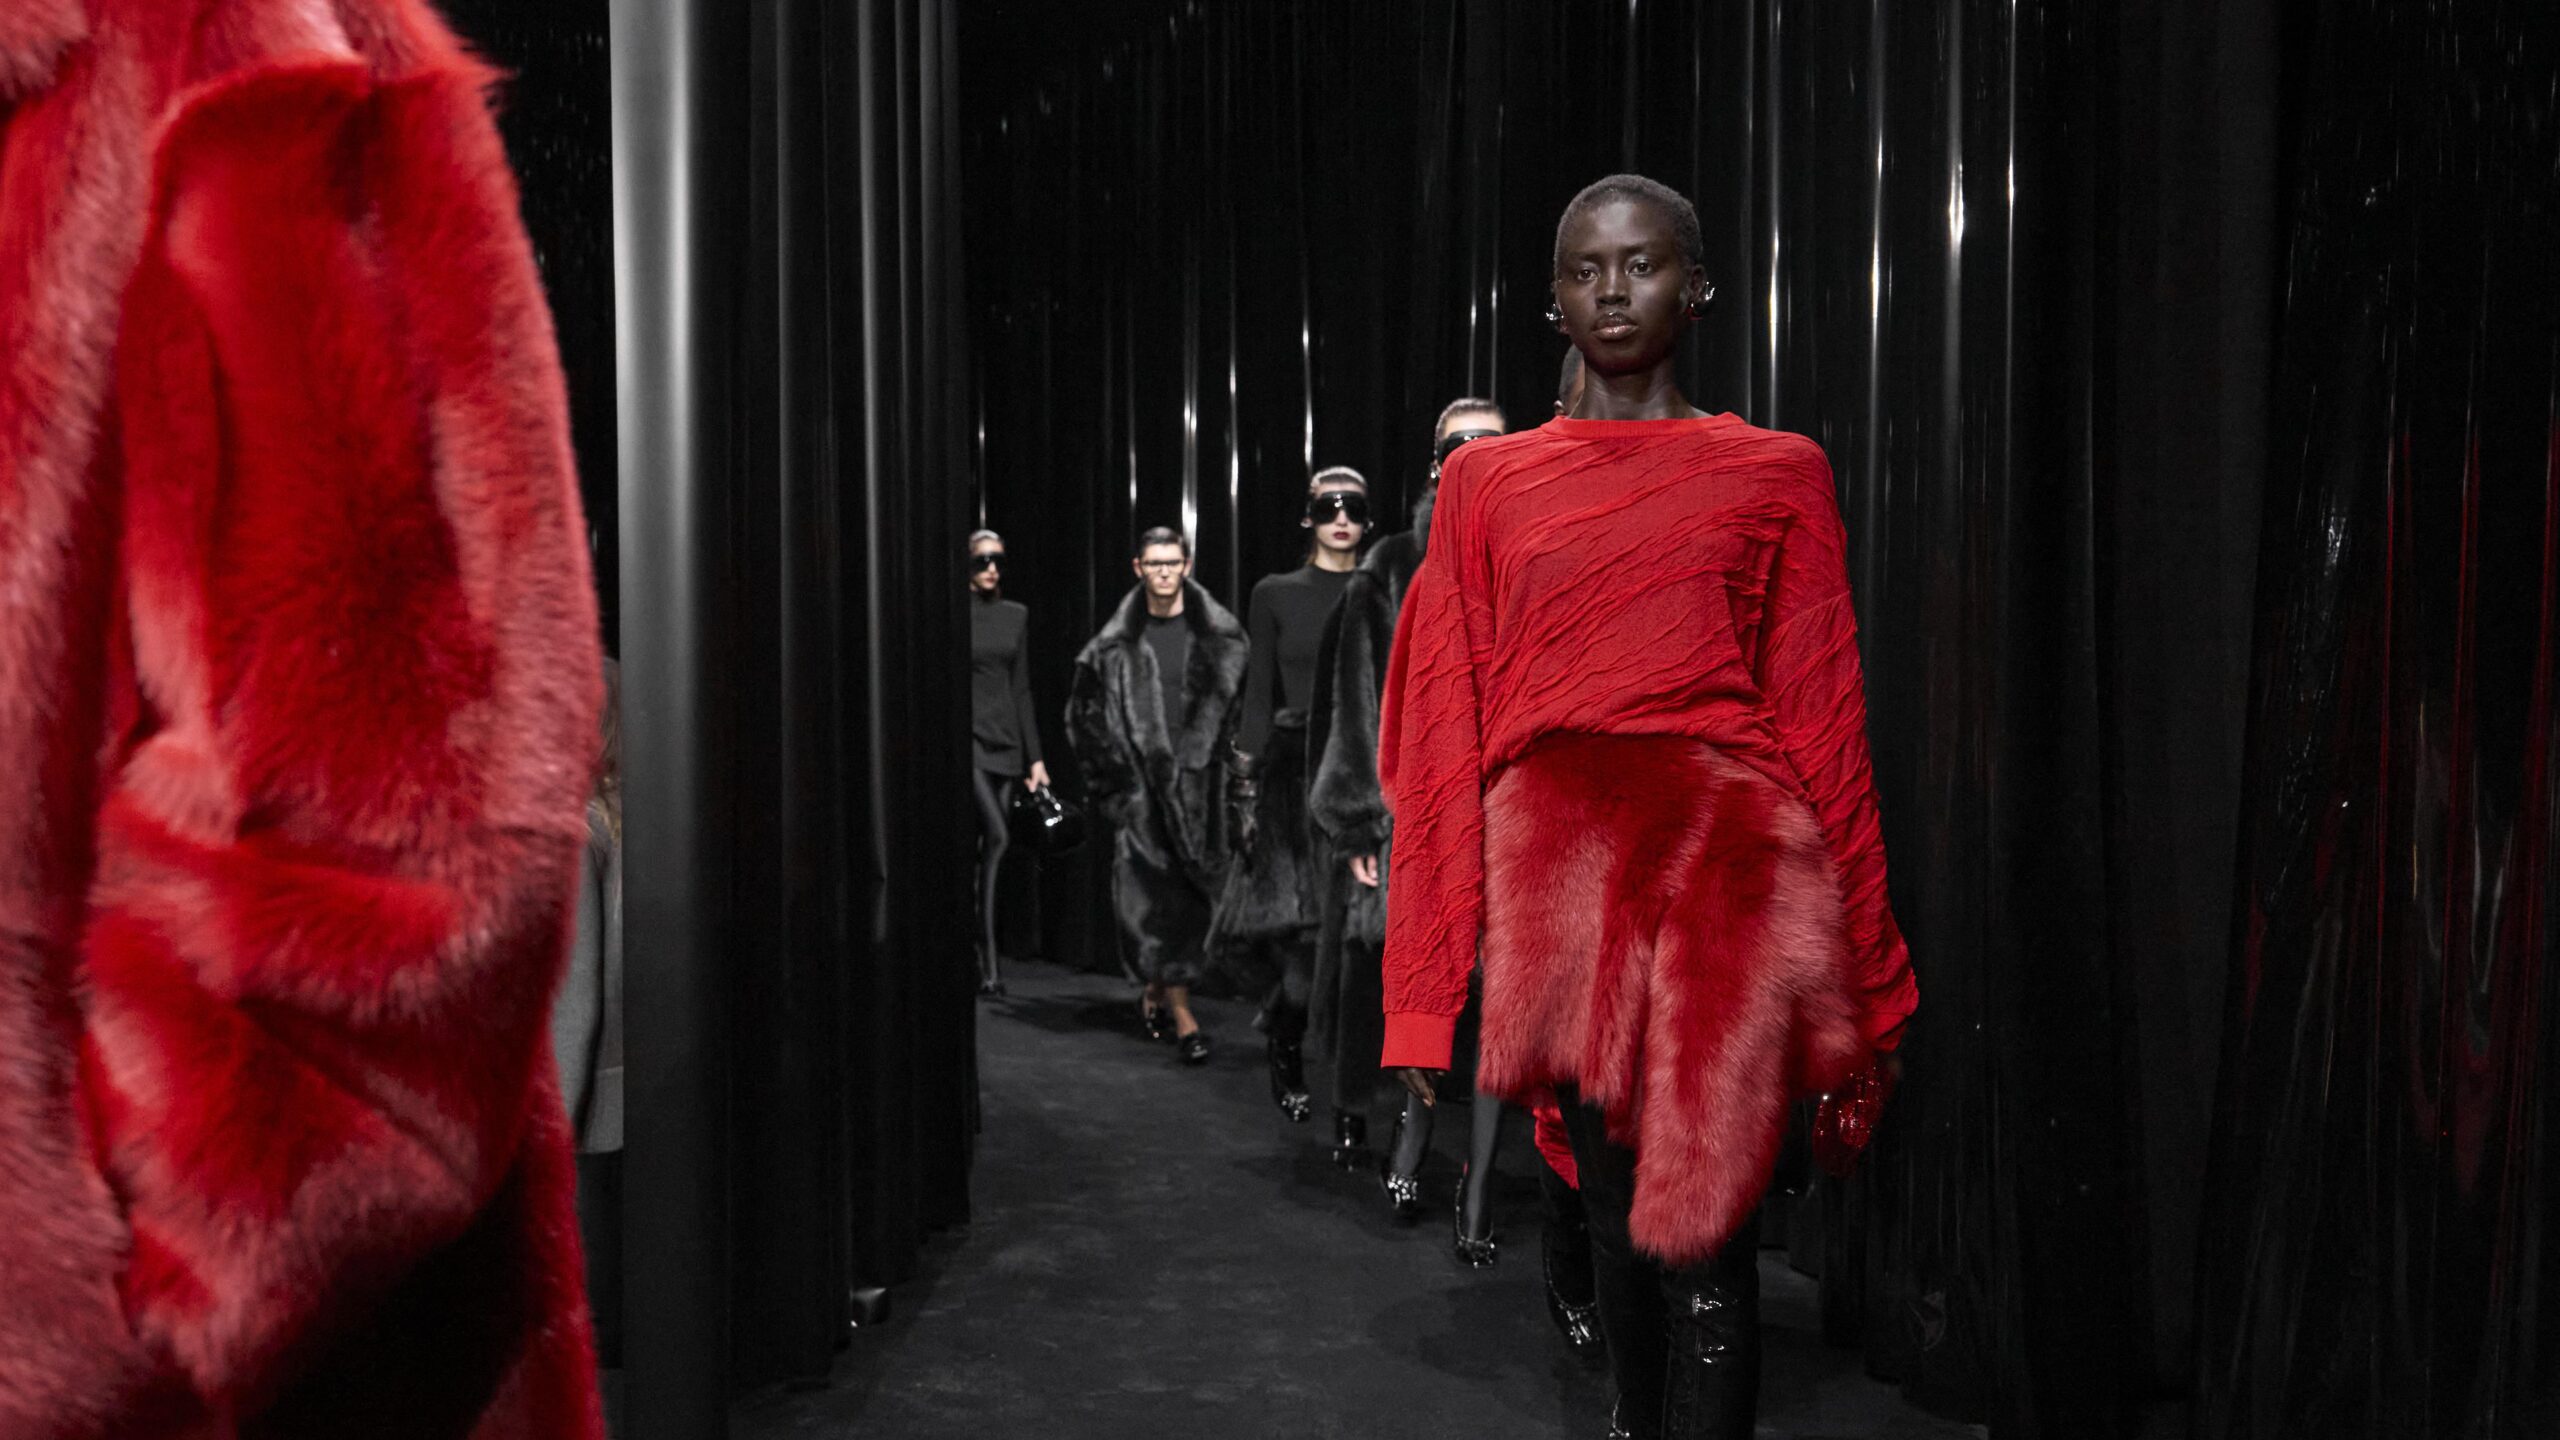 Rouge, noir pur, lignes essentielles : avec Rocco Iannone la « ferrarisation » de la mode va vite